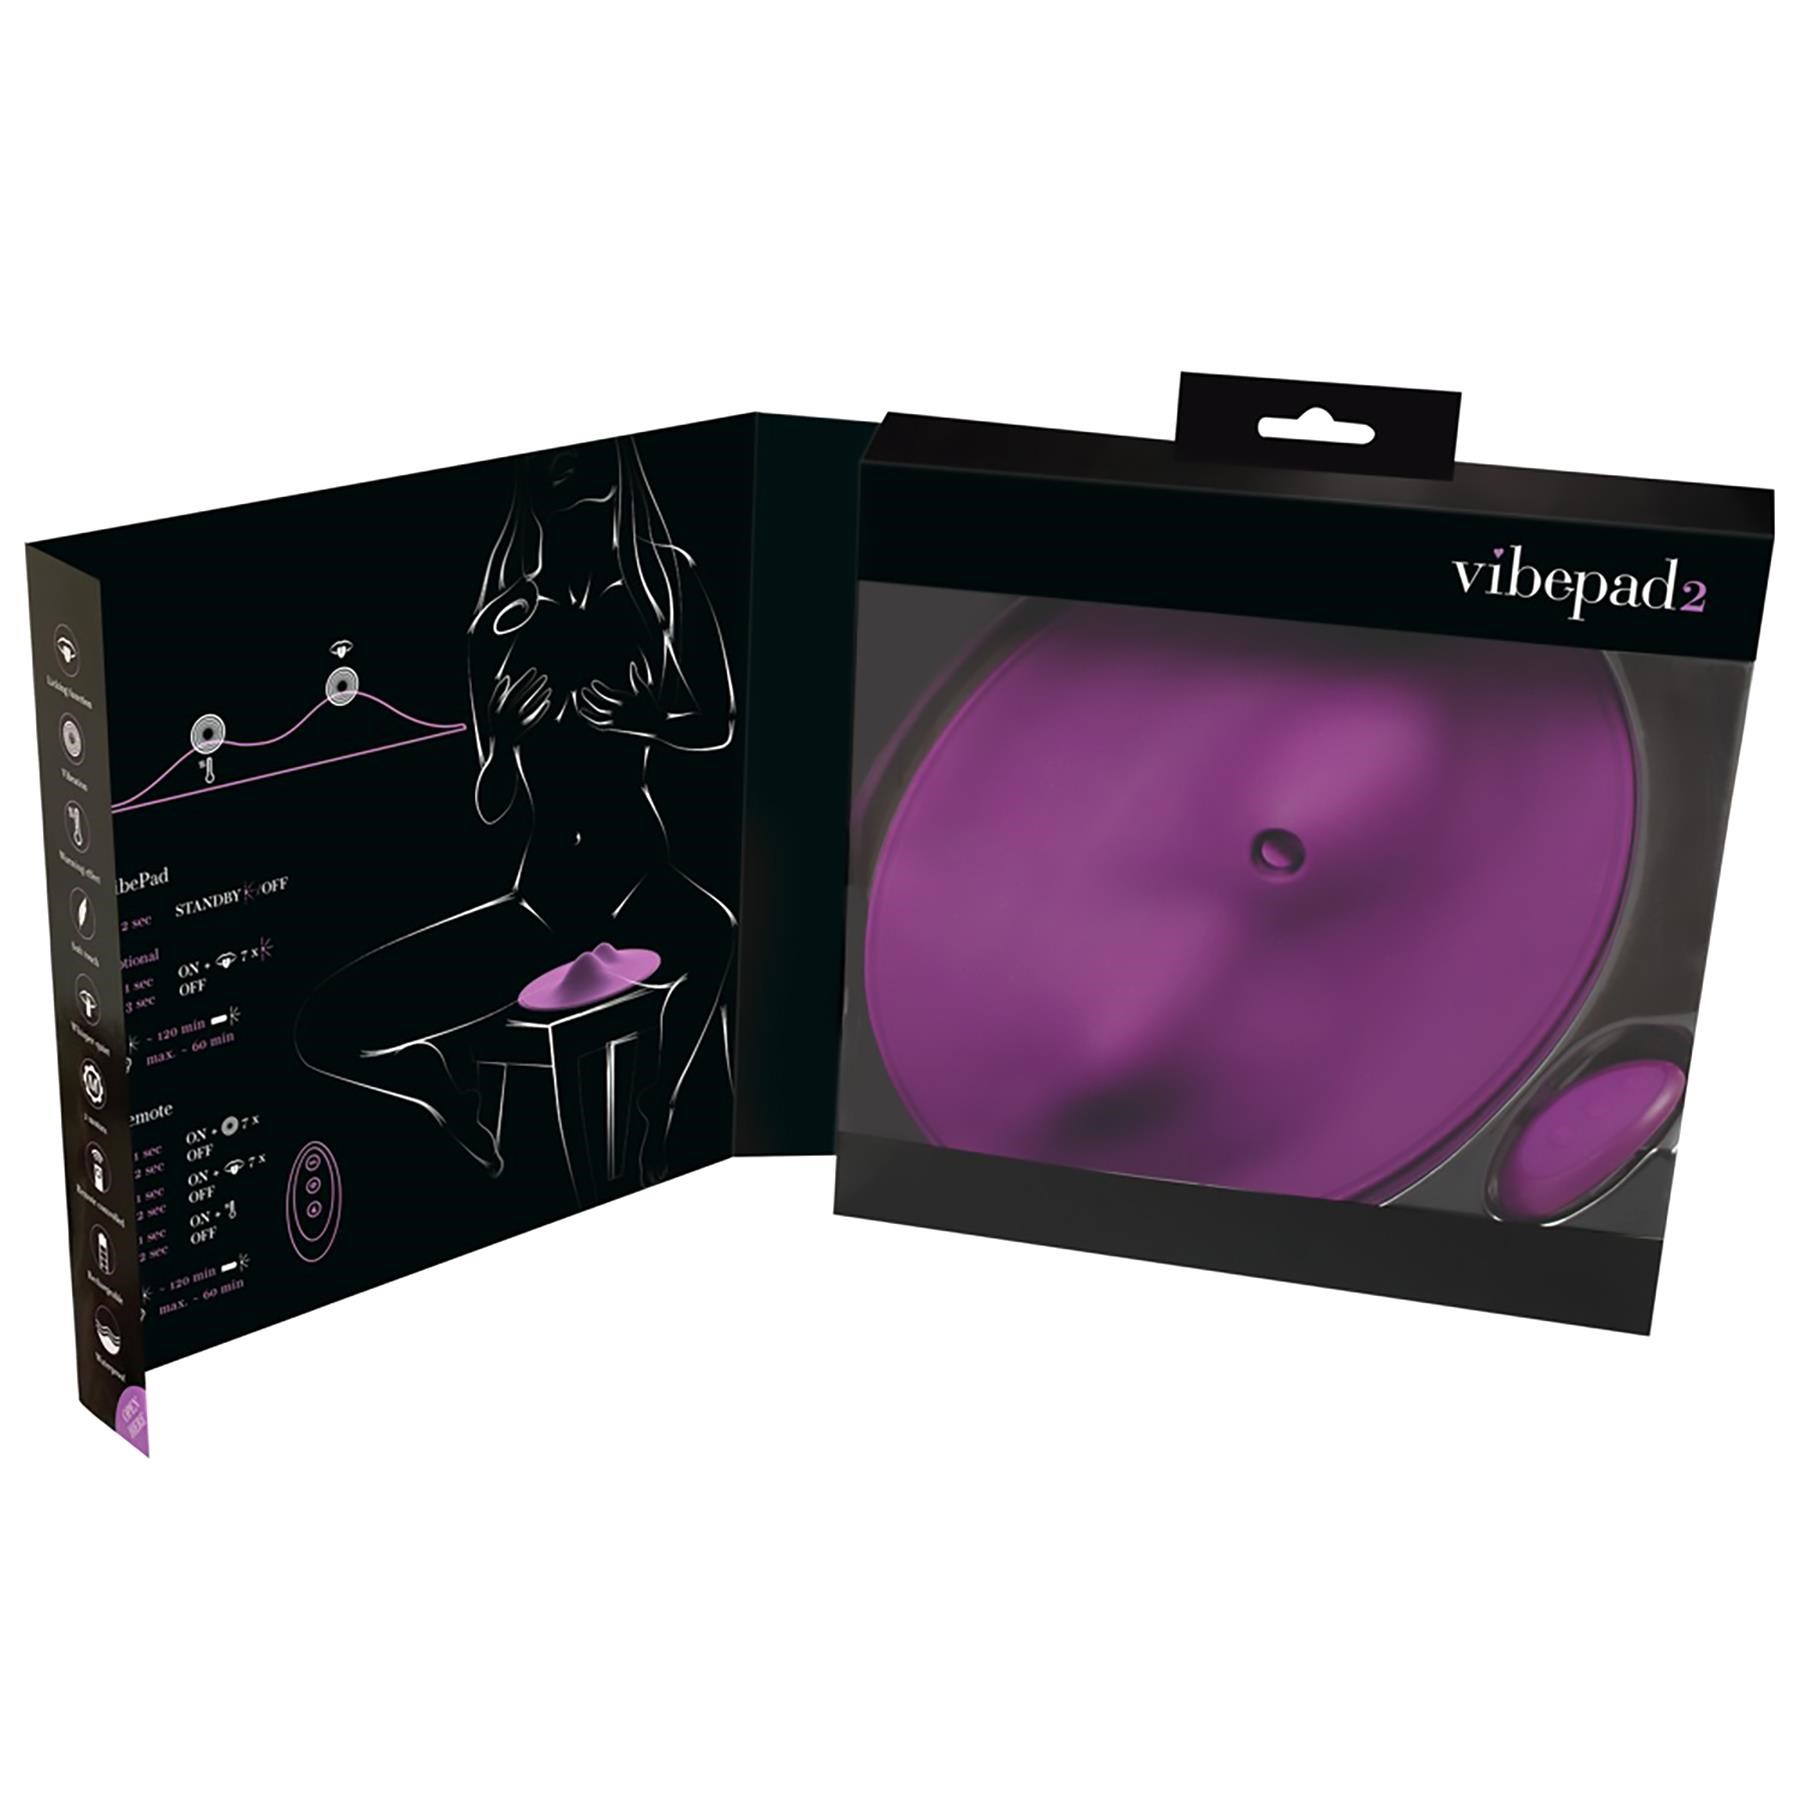 VibePad 2 Vibrating Grinder - Open Package Shot